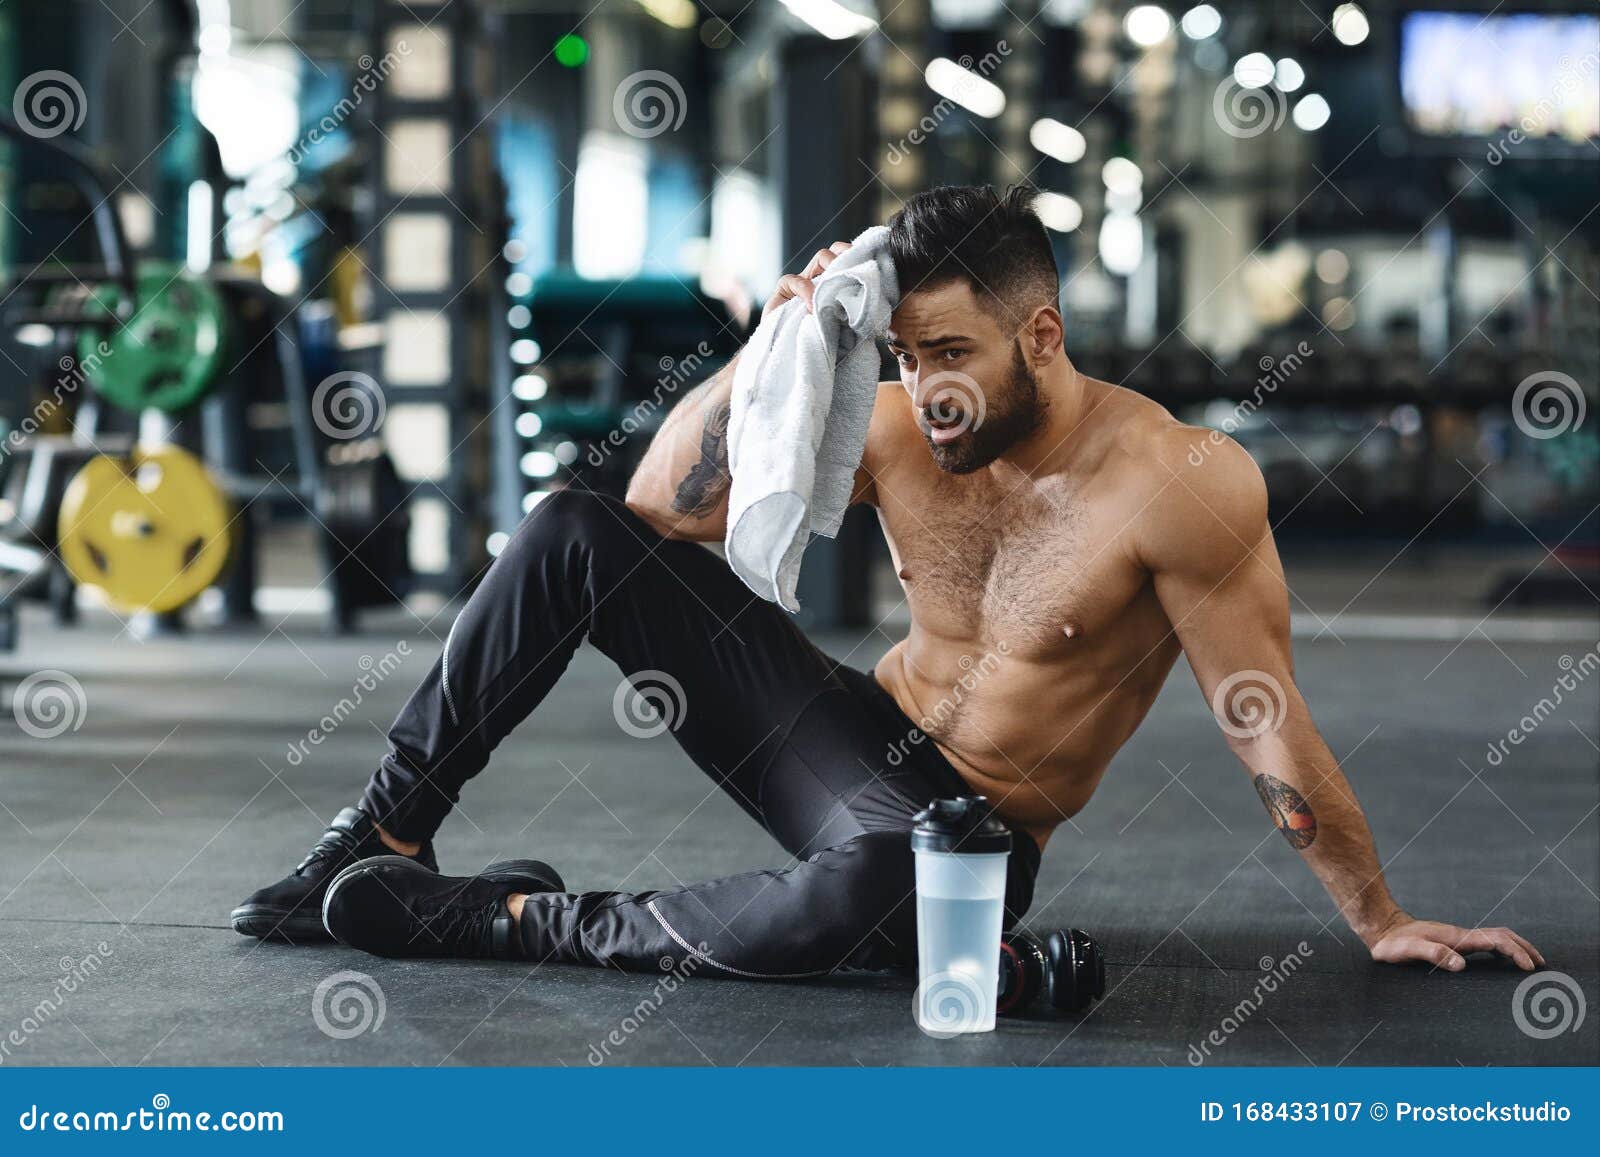 Hombre guapo deporte fuerte descansando después de hacer ejercicio